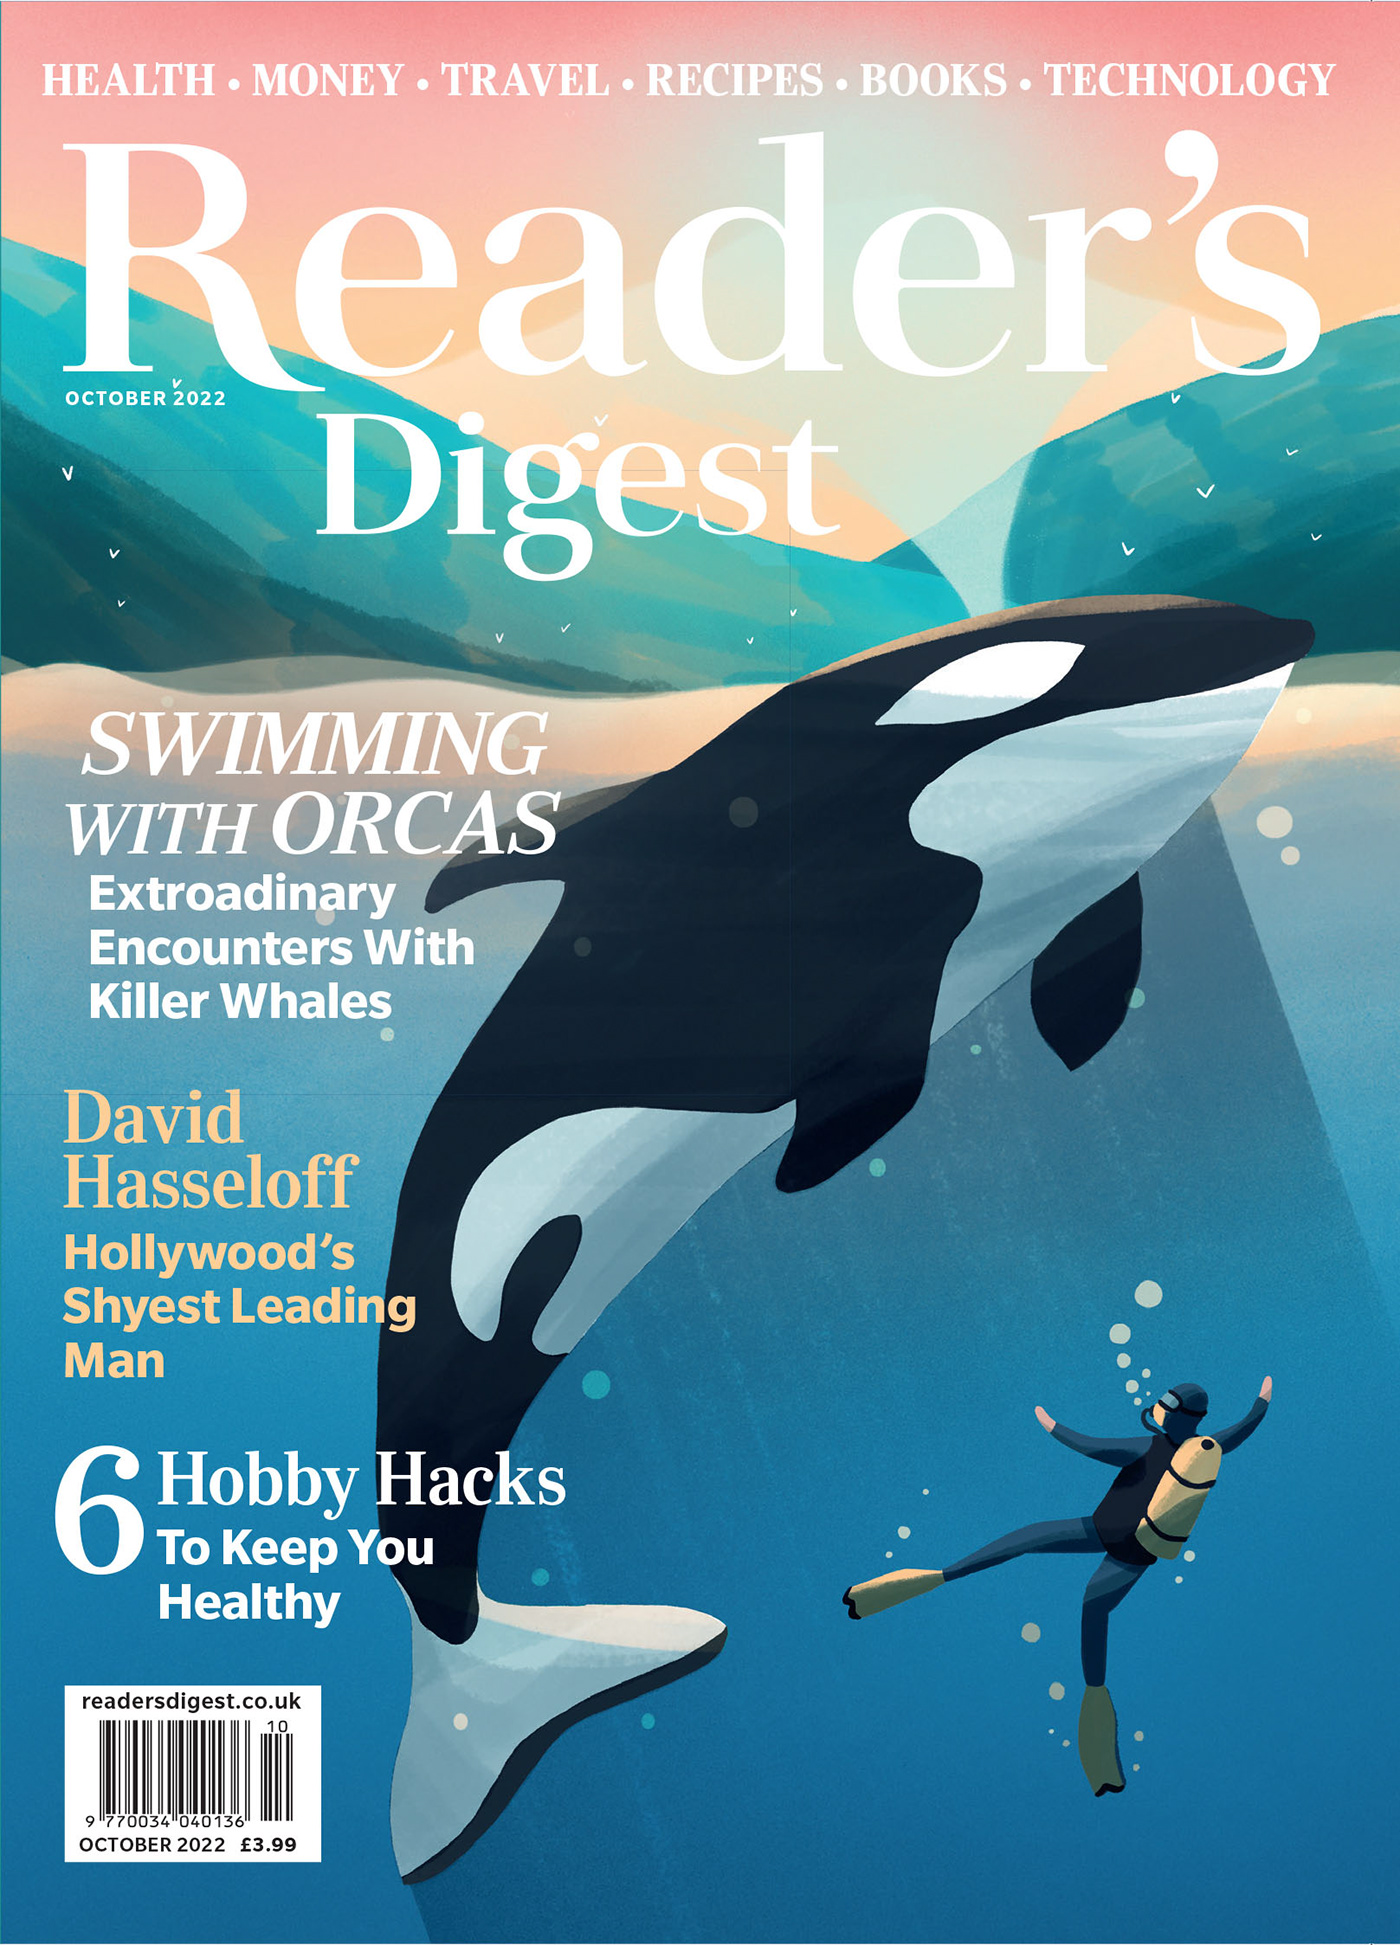 Digital Art  editorial Editorial Illustration Front Cover Front cover illustration ILLUSTRATION  orcas readers digest wildlife